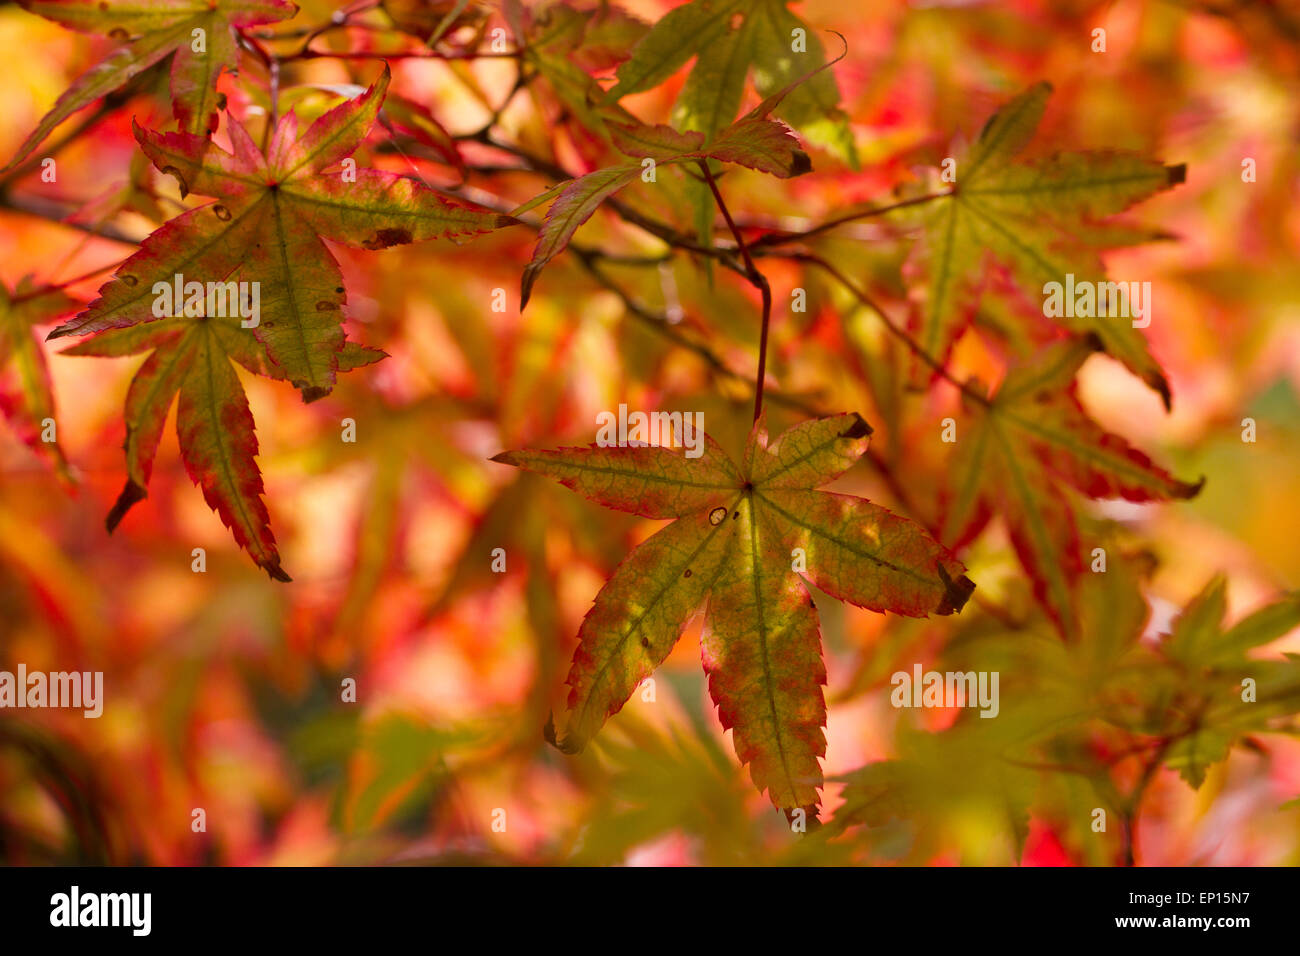 Japanischer Ahorn (Acer Palmatum) Sorte 'Ginko San' Blätter an einem Baum Farbe im Herbst drehen. Herefordshire, England. September. Stockfoto